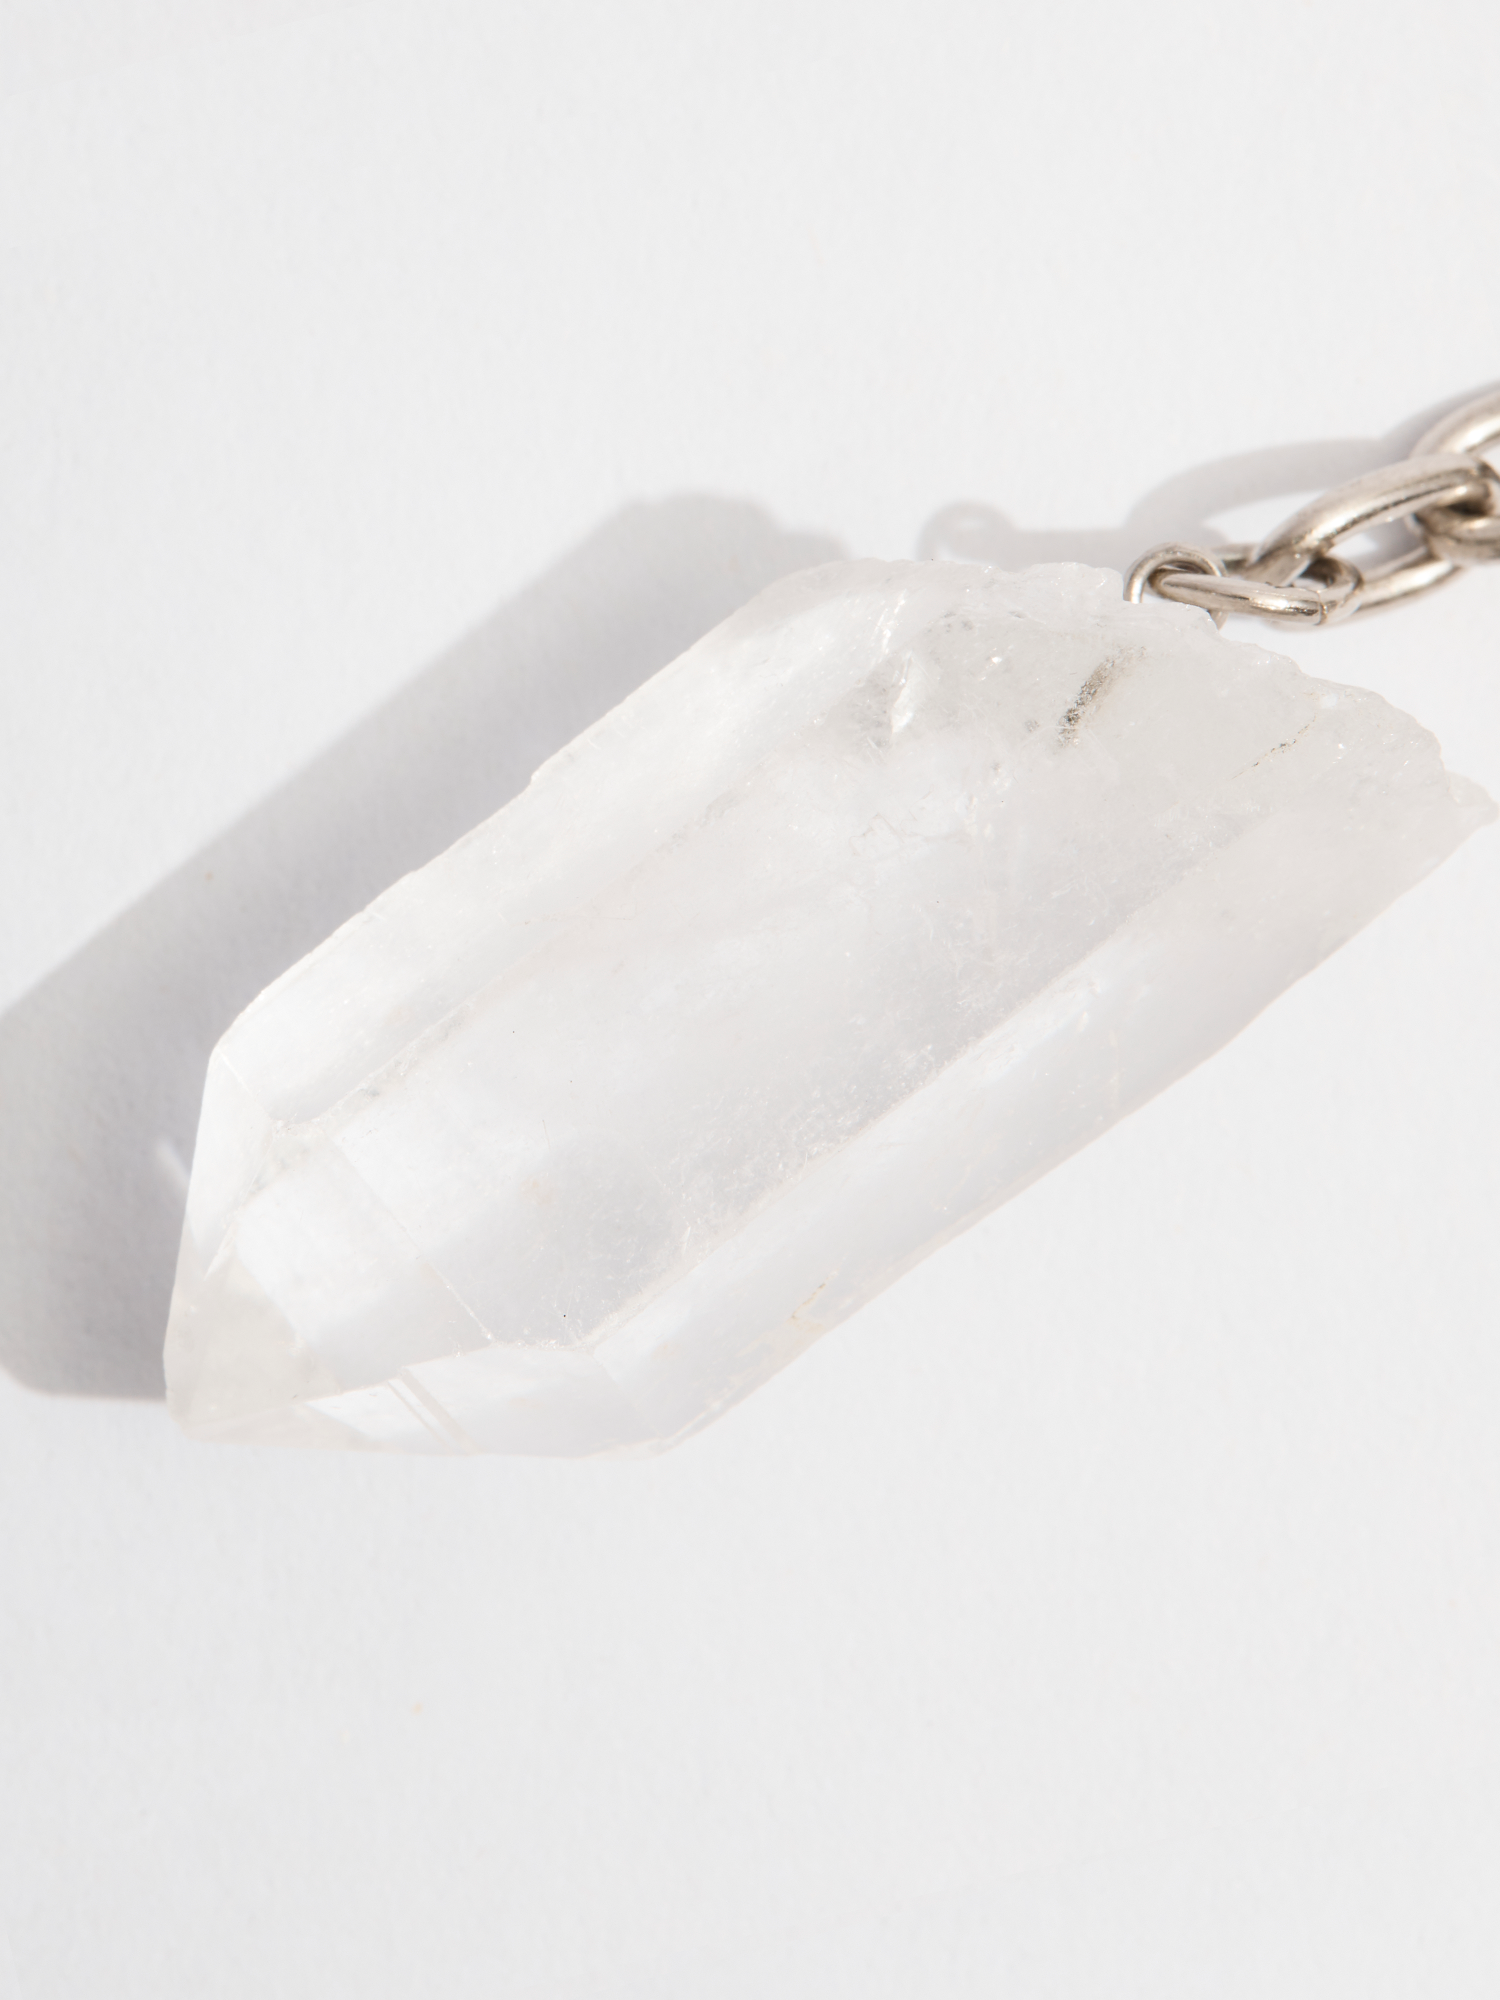 clear quartz crystal keyring